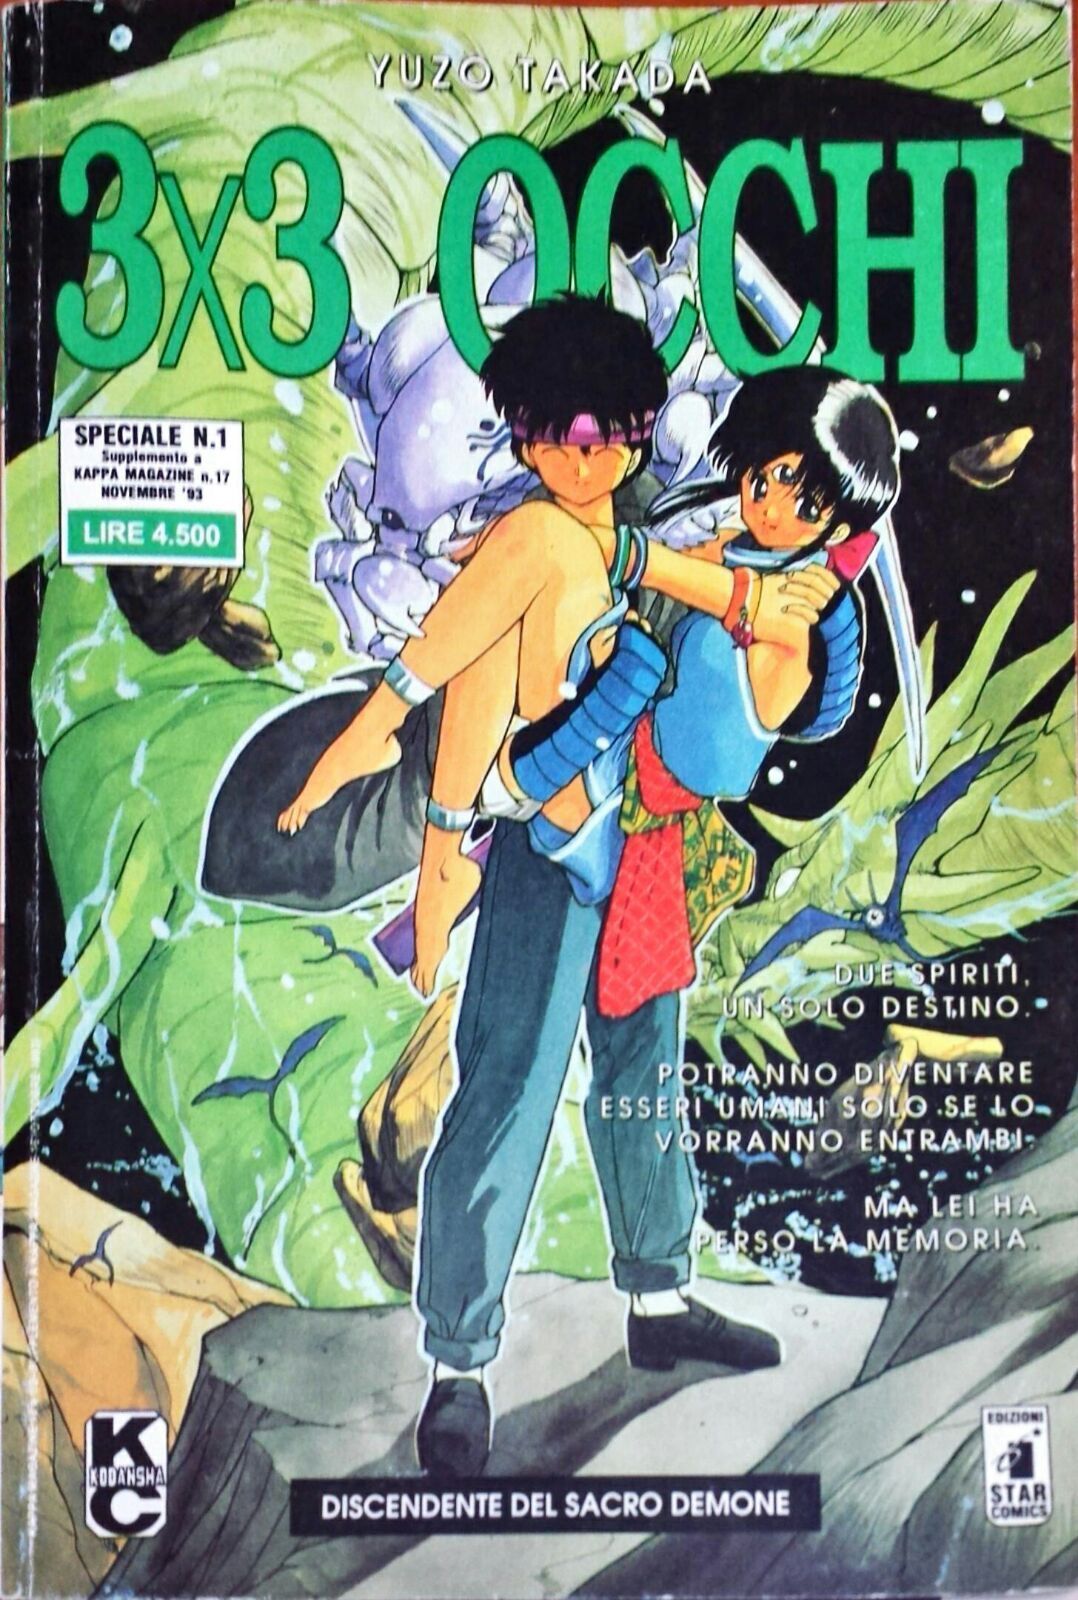 3x3 Occhi - Speciale N.1 - Numero 16 e 1/2 - Yuzo Takada - Edizioni Star Comics